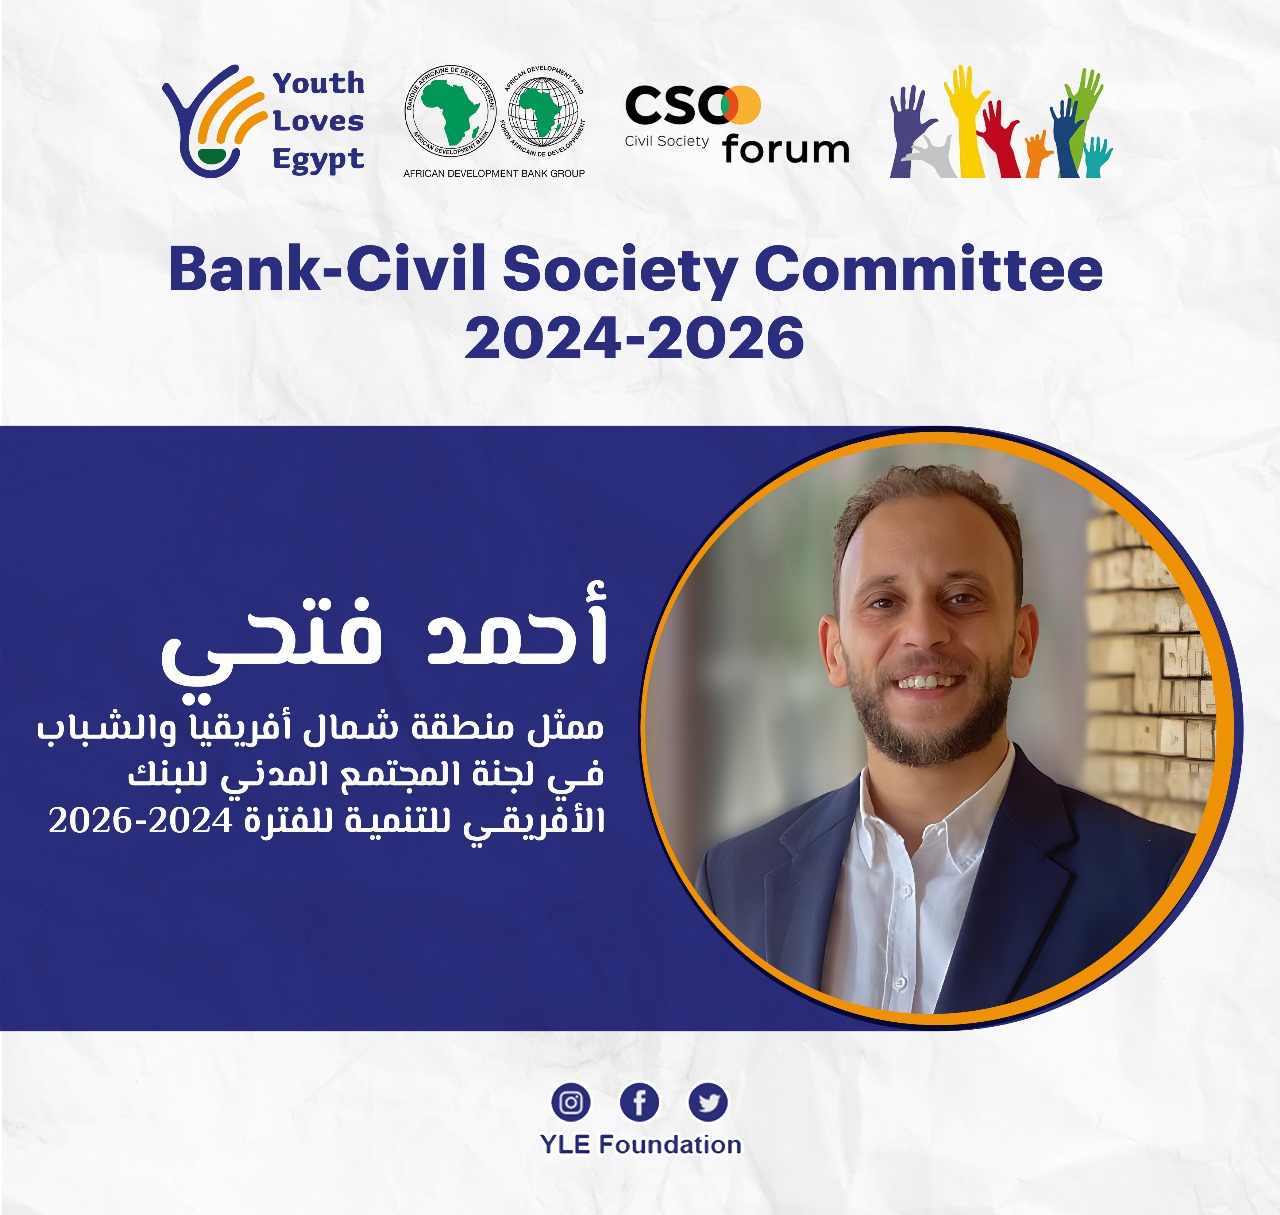 بنك التنمية الأفريقي يختار مؤسسة مصرية متخصصة في البيئة عضوا في لجنة المجتمع المدني الخاصة به